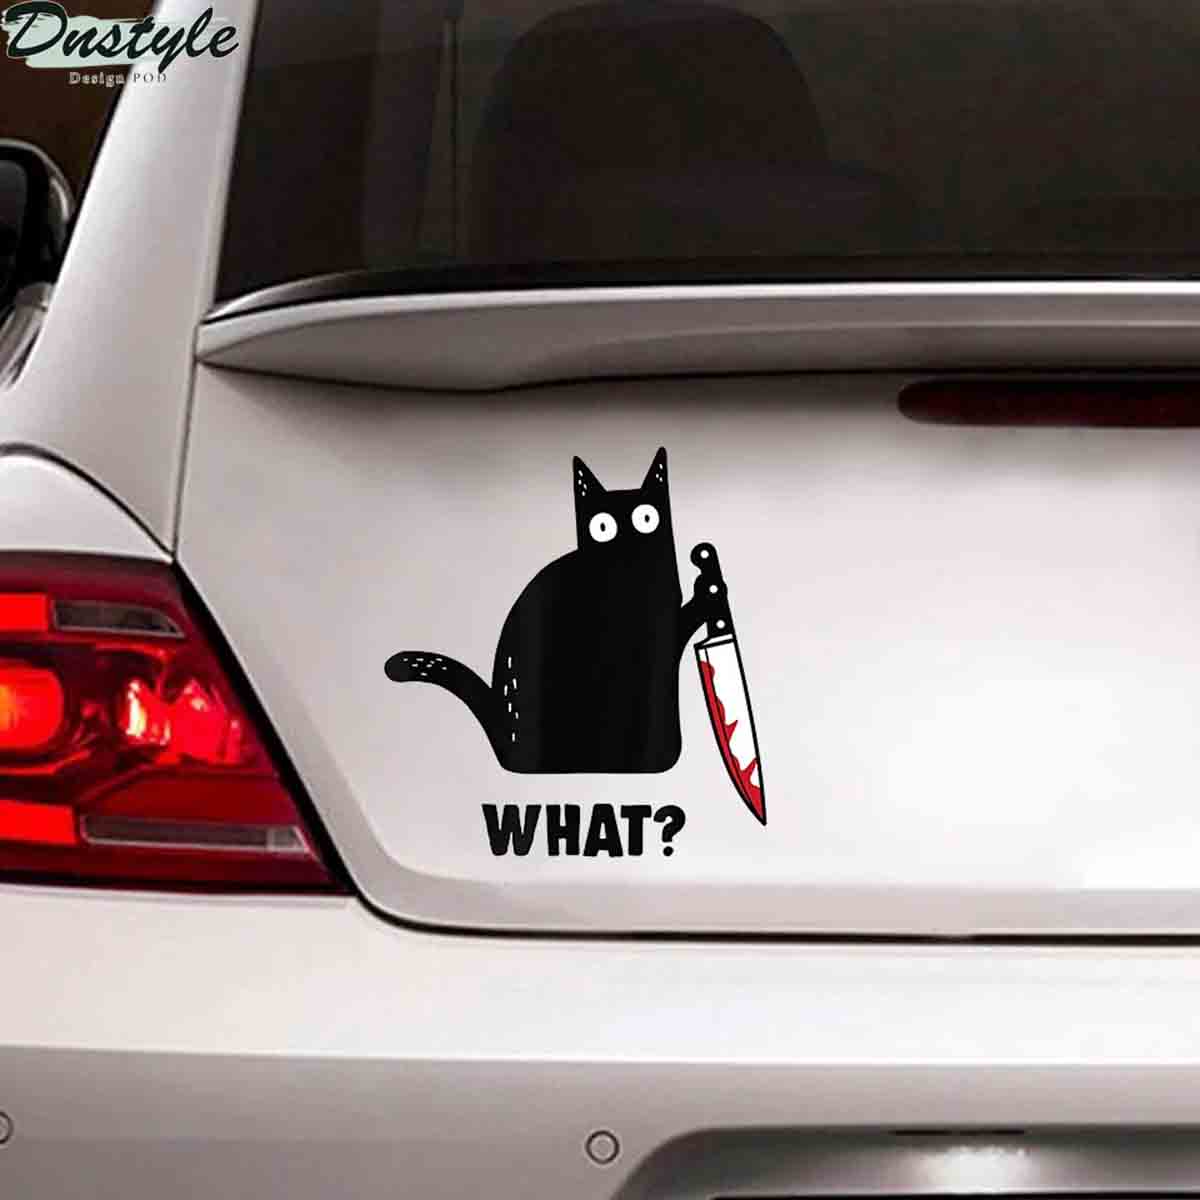 Black cat knife murder car decal sticker